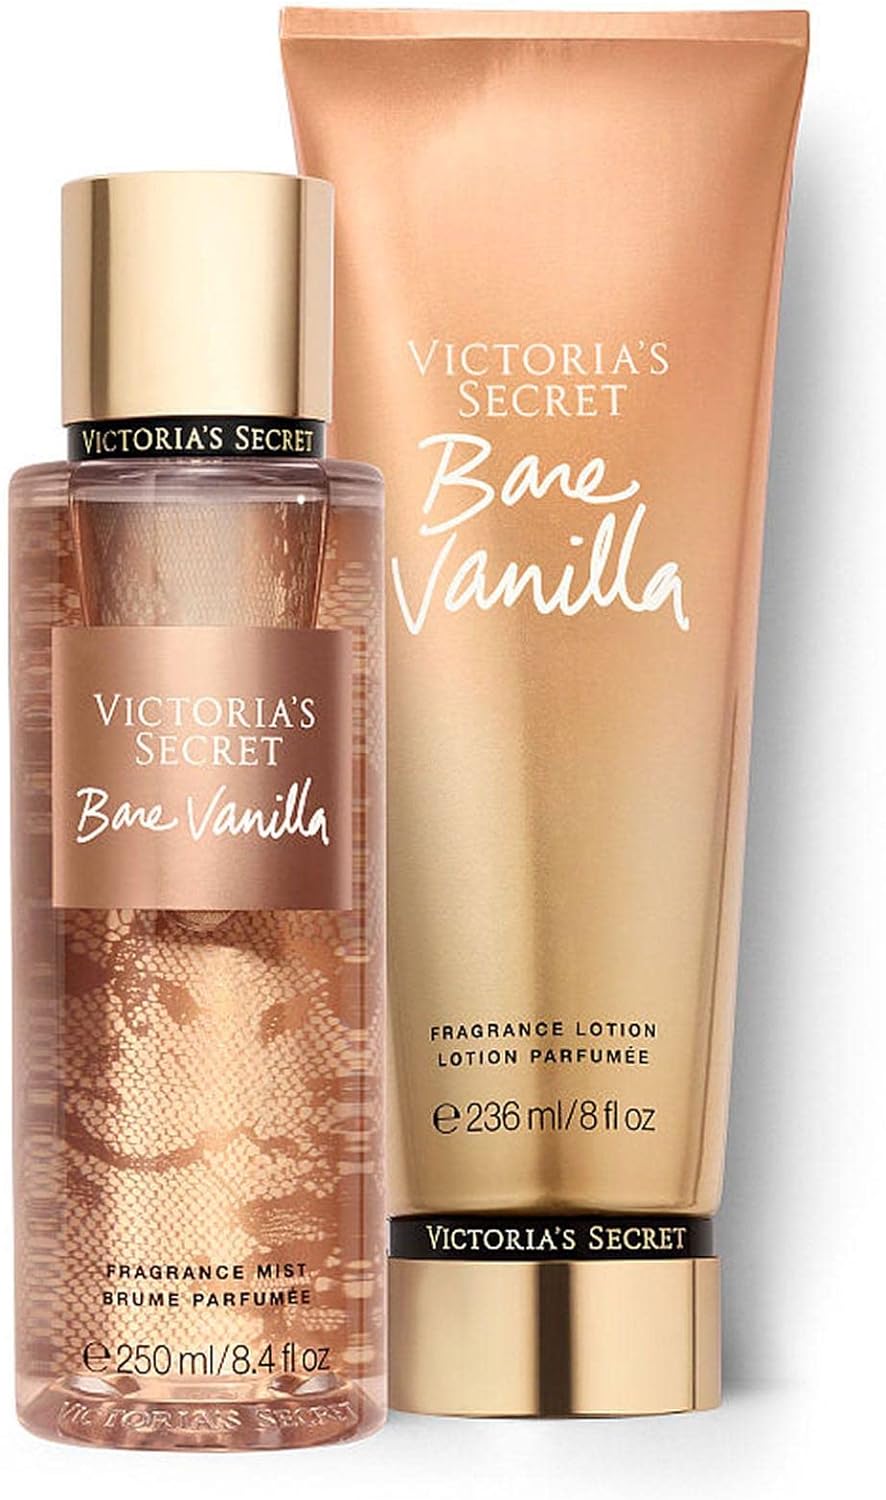 مه و لوسیون وانیلی بره ویکتوریا سکرت مدل Victorias Secret Bare Vanilla - ارسال 10 الی 15 روز کاری